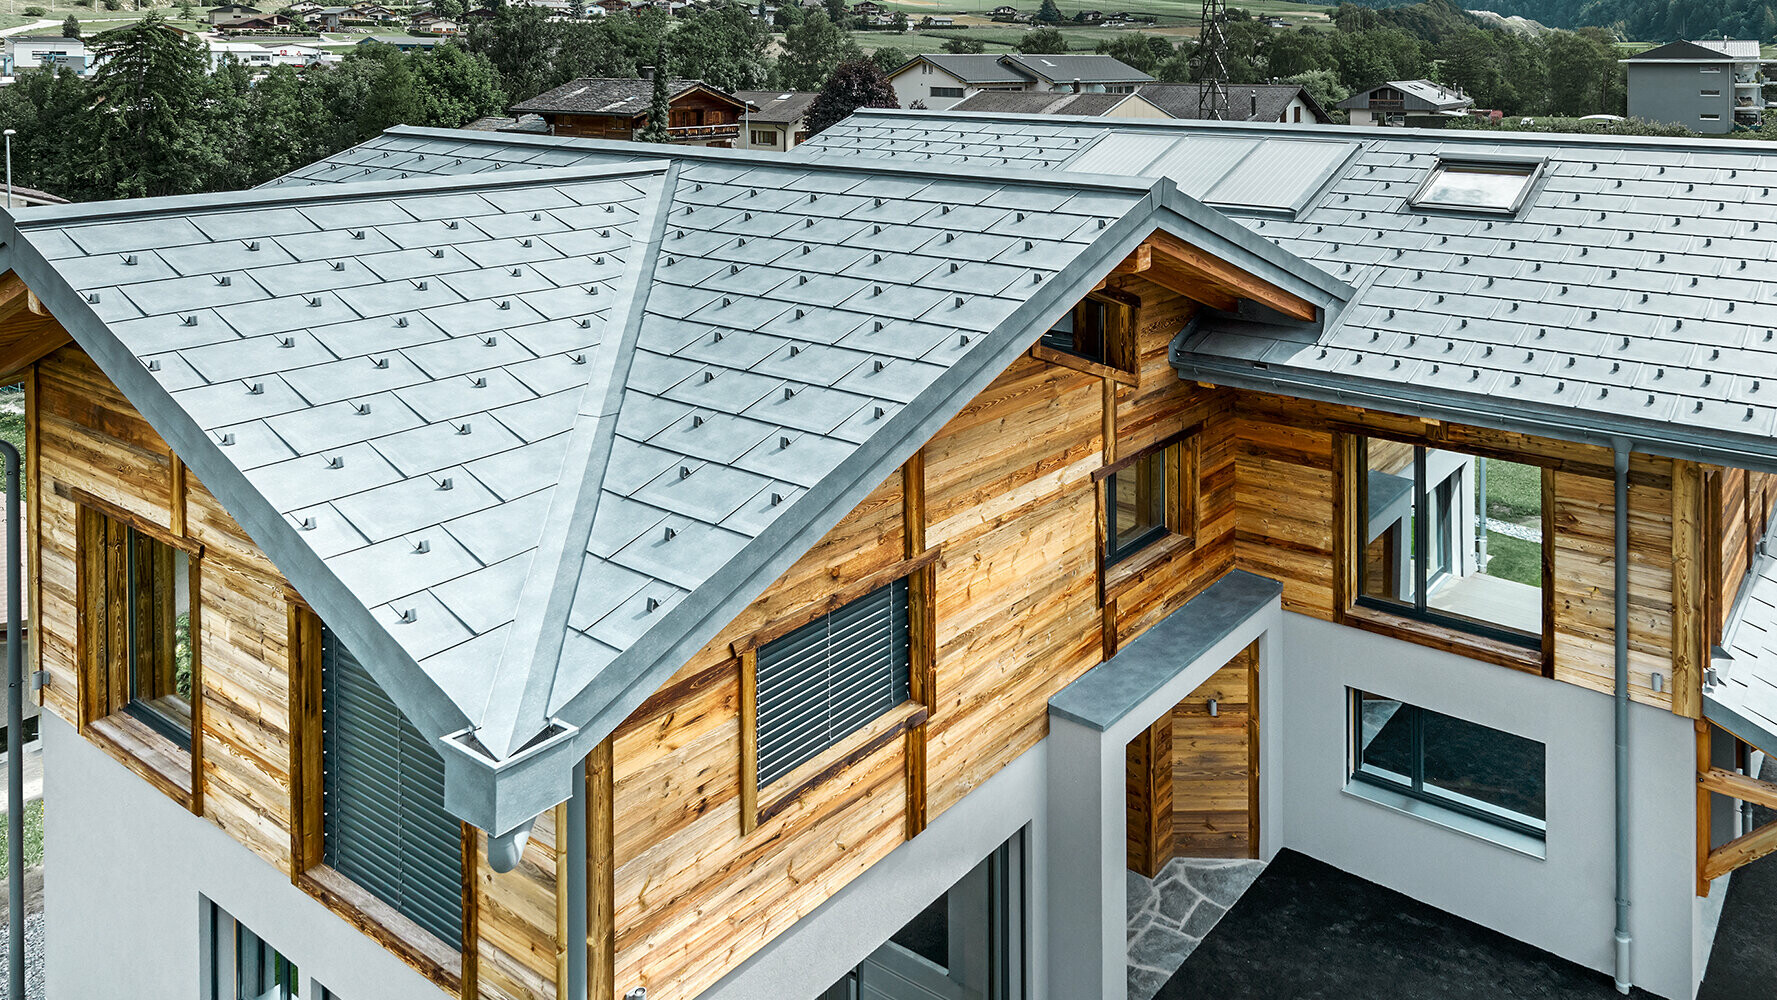  Chalet avec une couverture de toit PREFA couleur P.10 gris pierre, combinée avec une façade en bois